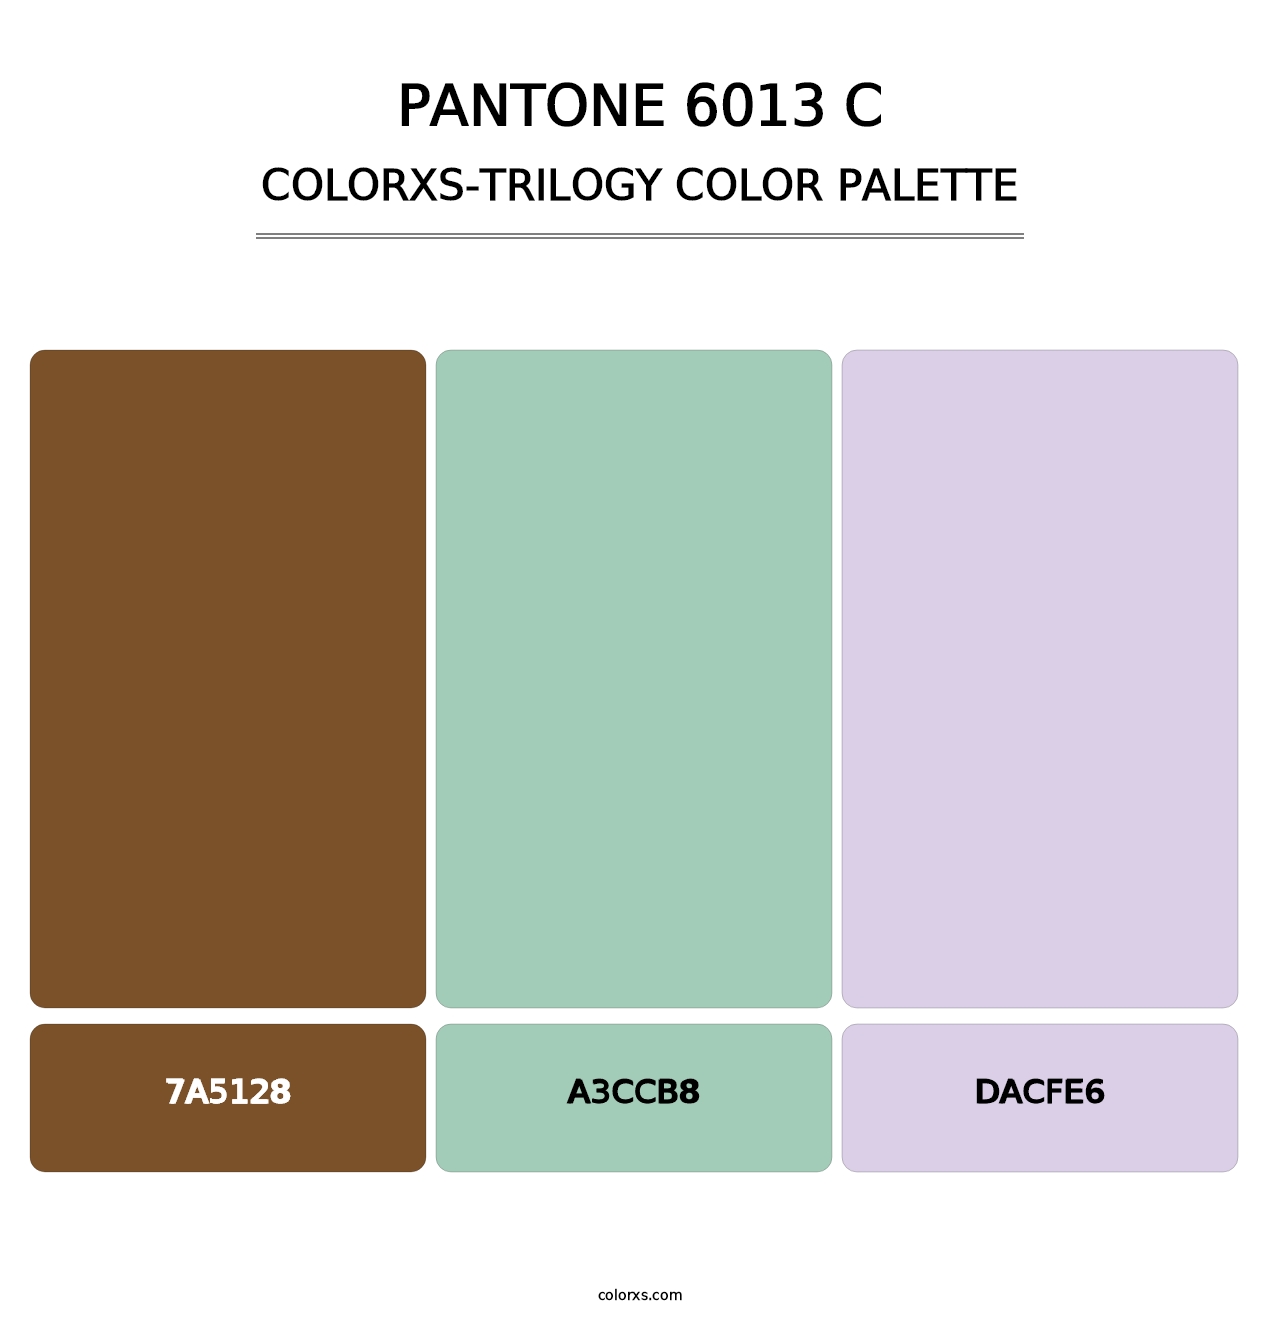 PANTONE 6013 C - Colorxs Trilogy Palette